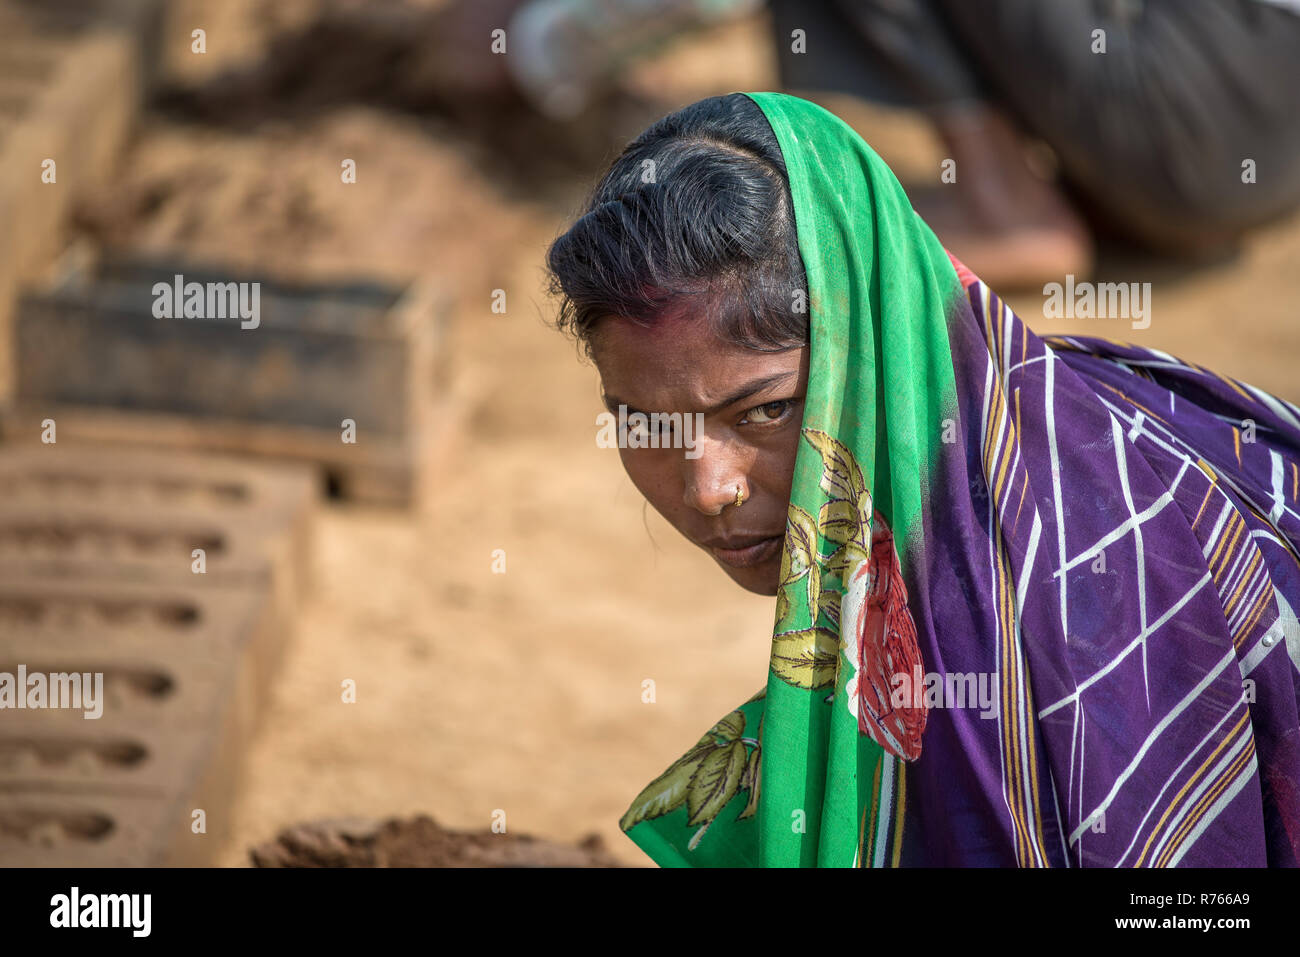 Ein woma mit einem bunten Sari gekleidet arbeitet in einer Ziegelfabrik, Rajasthan, Indien Stockfoto